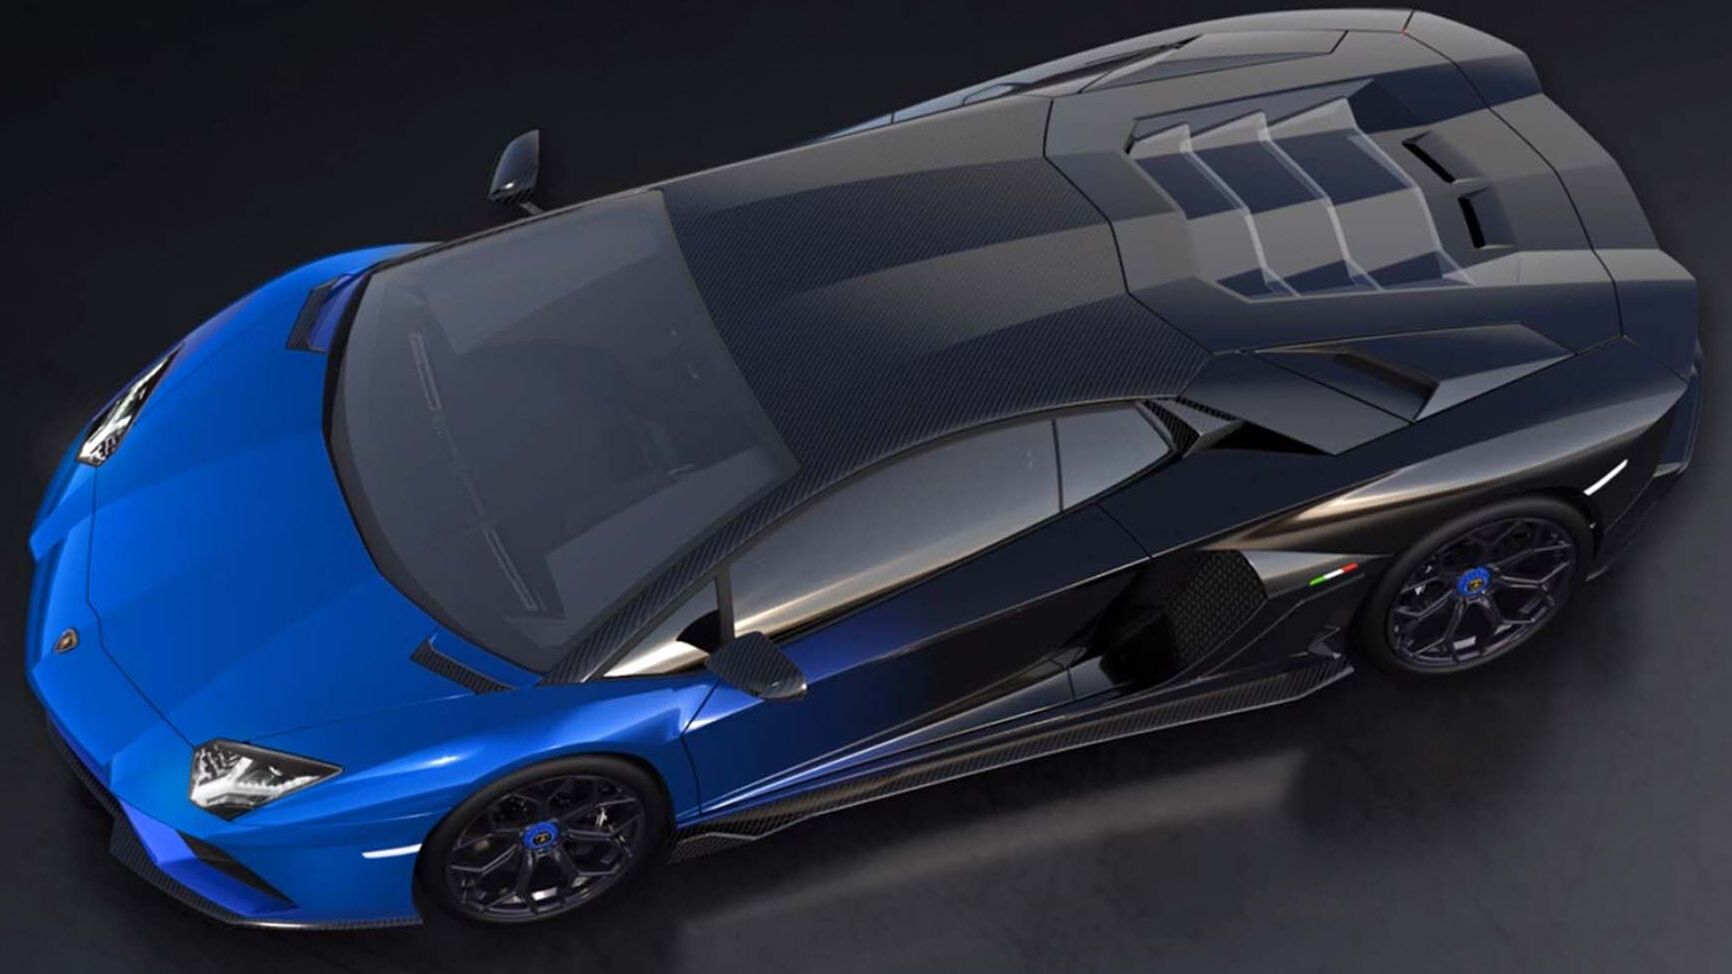 L’esclusiva Lamborghini Aventador LP 780-4 Ultimae Coupé che sarà abbinata a un NFT 1.1 e messa all'asta